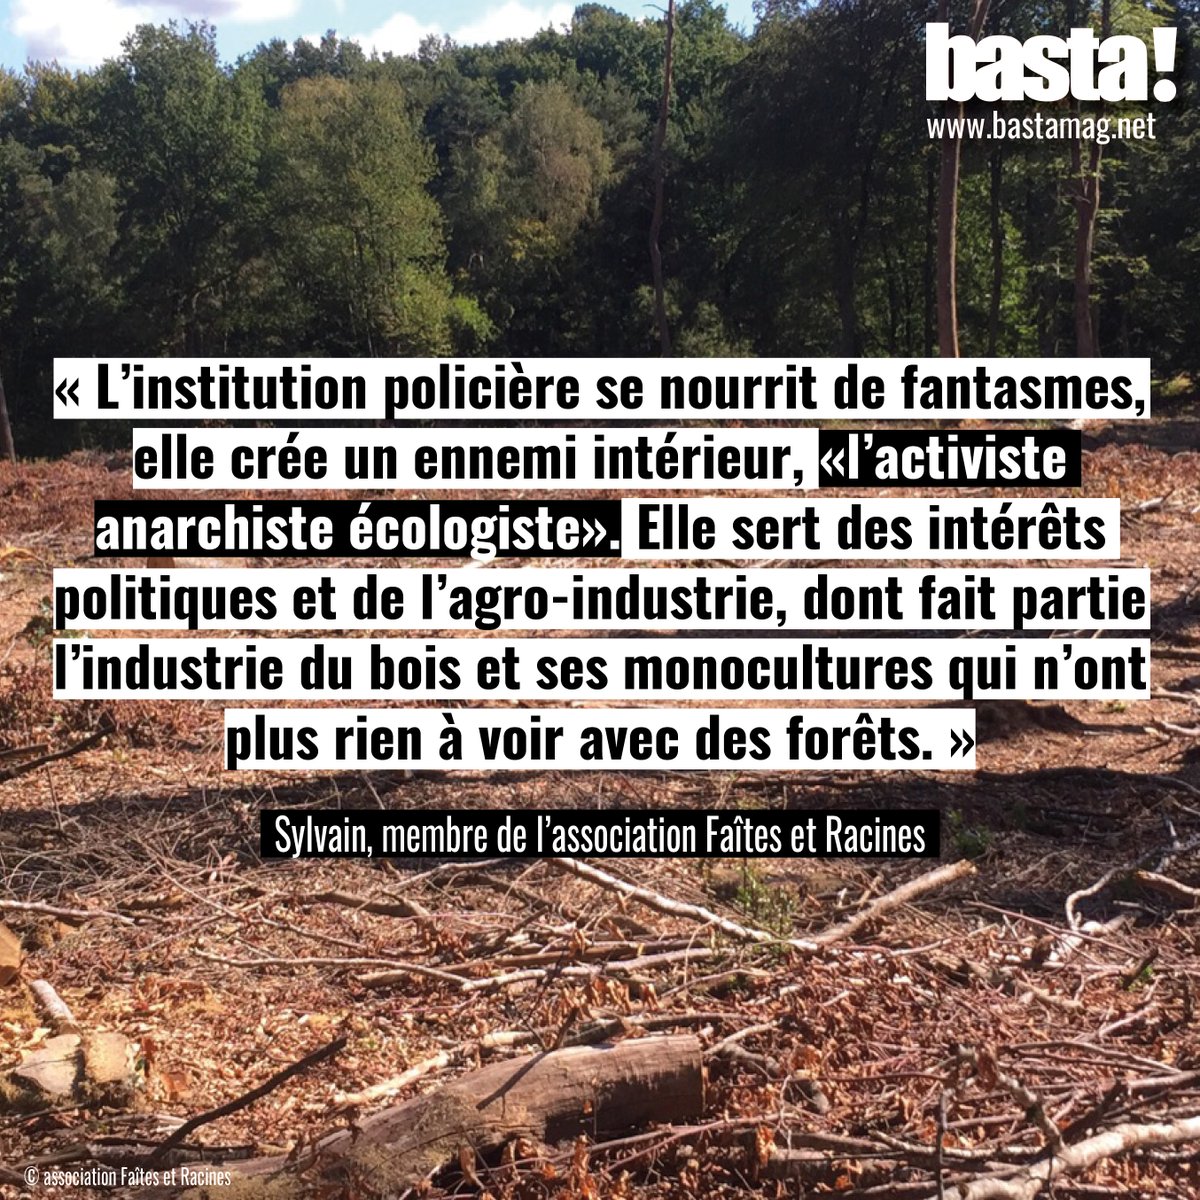 Finalement vendue à un agriculteur, la forêt convoitée a été rasée cet été 2020. Pour la DDT, « la coupe de ces parcelles ne constitue pas une infraction au code forestier ». Un avis que ne partage pas l’asso, « le bois a été coupé à plus de 90% sur la totalité des 8,5ha ».